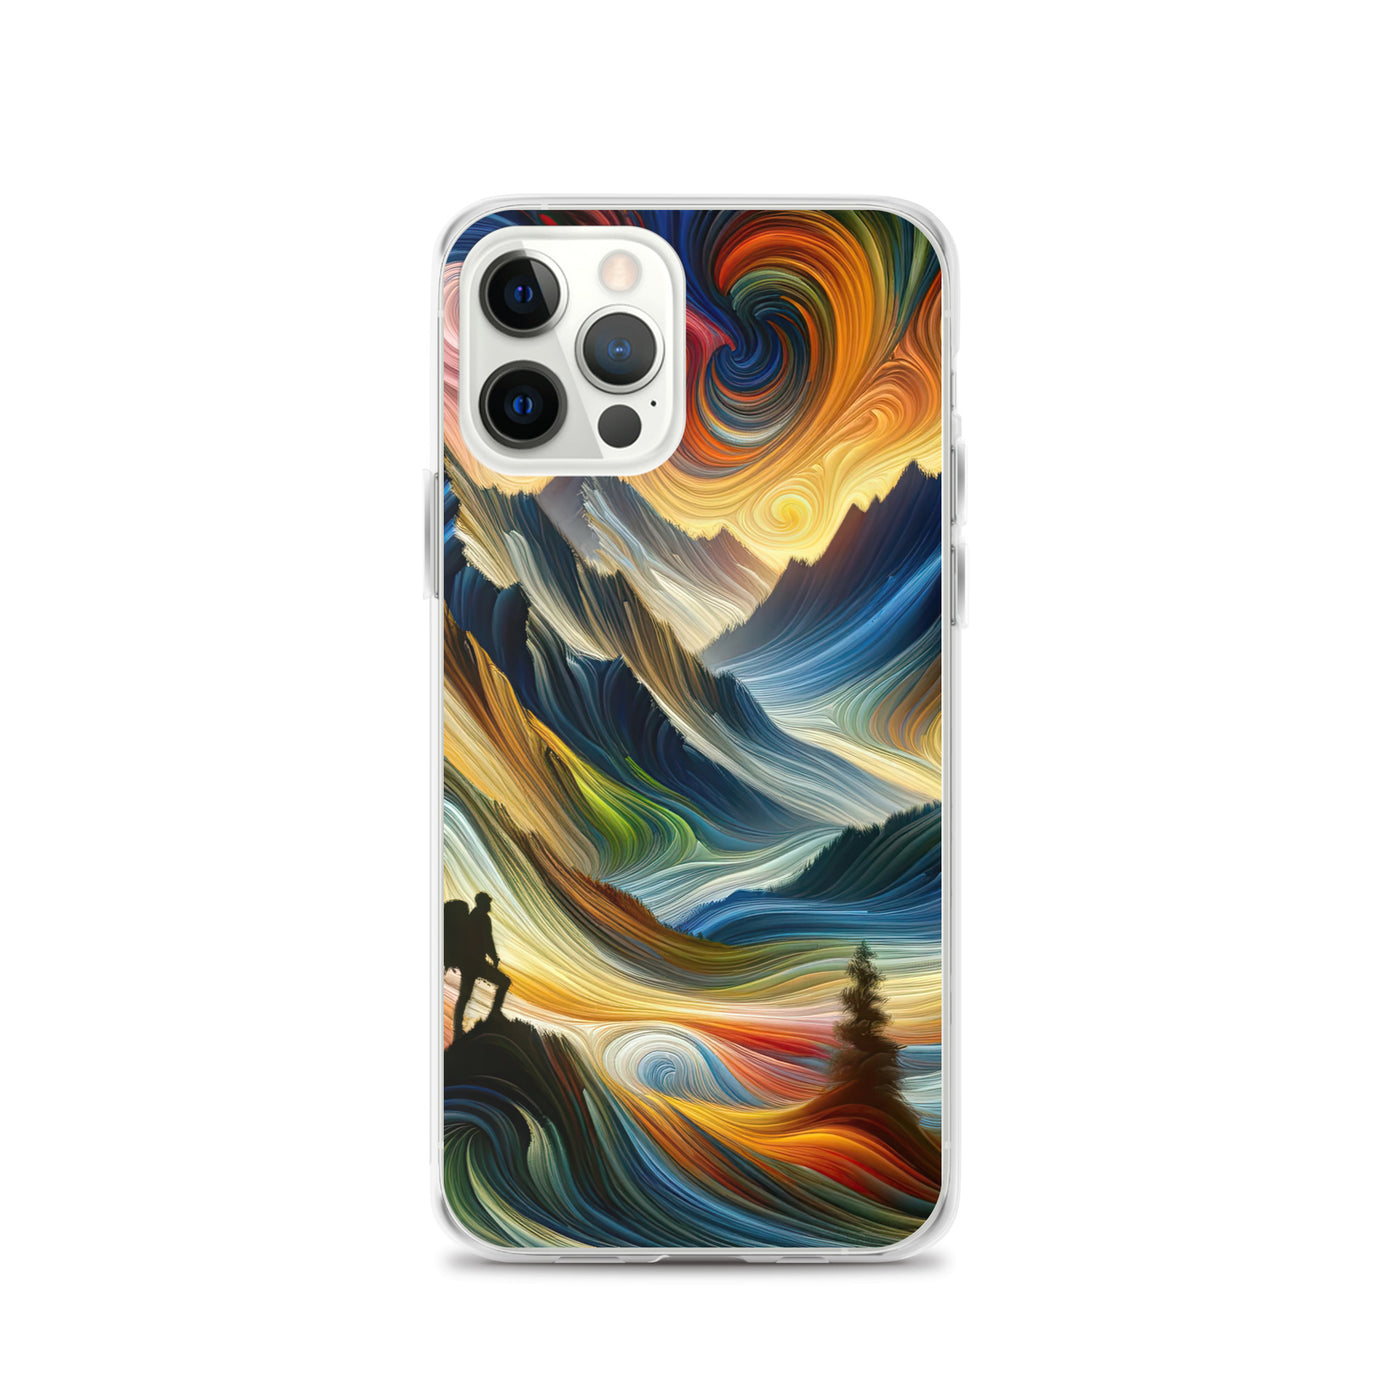 Abstraktes Kunstgemälde der Alpen mit wirbelnden, lebendigen Farben und dynamischen Mustern. Wanderer Silhouette - iPhone Schutzhülle (durchsichtig) wandern xxx yyy zzz iPhone 12 Pro